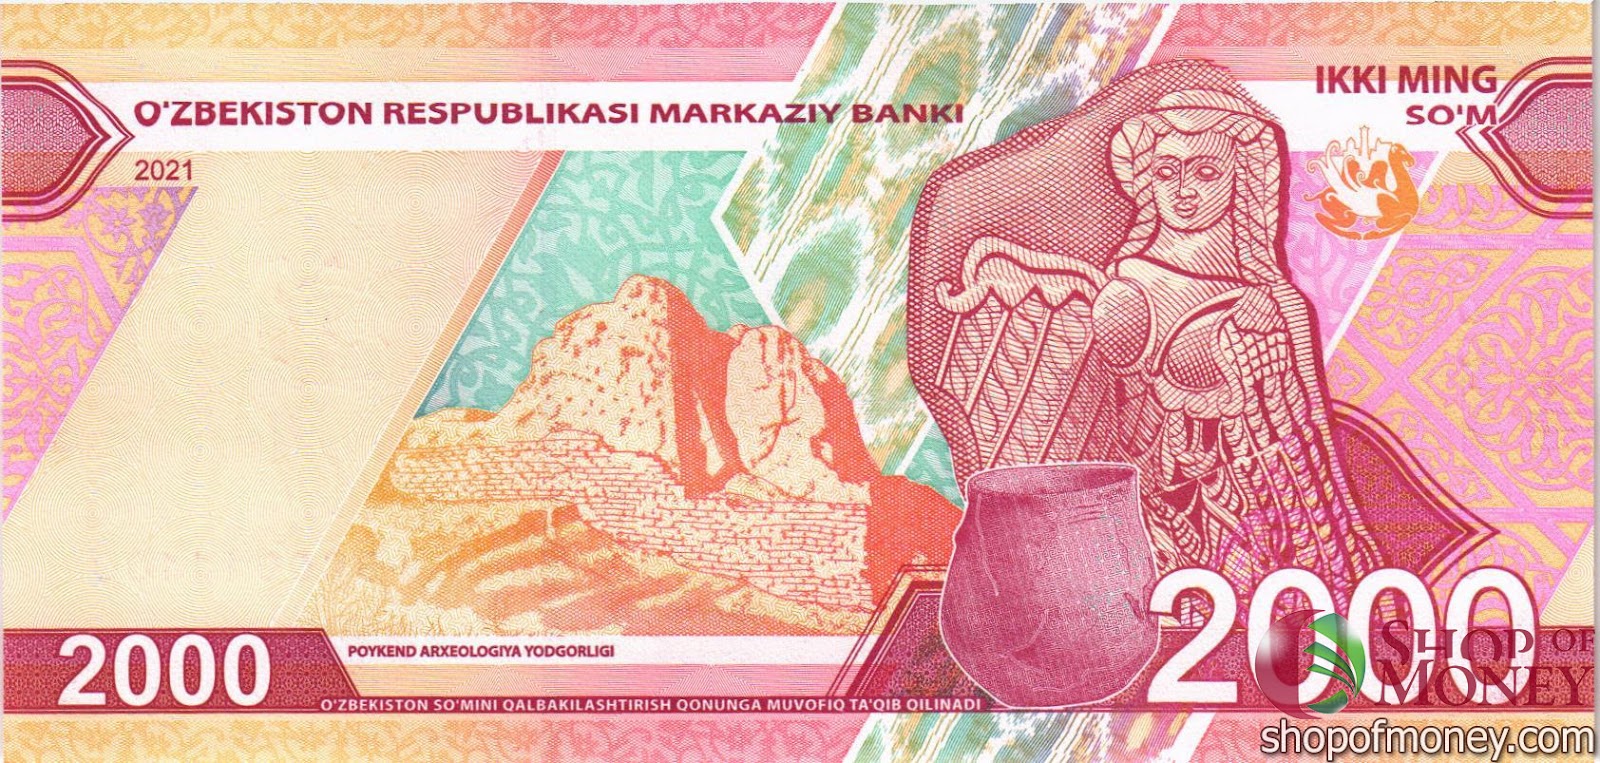 изображение валюты республики